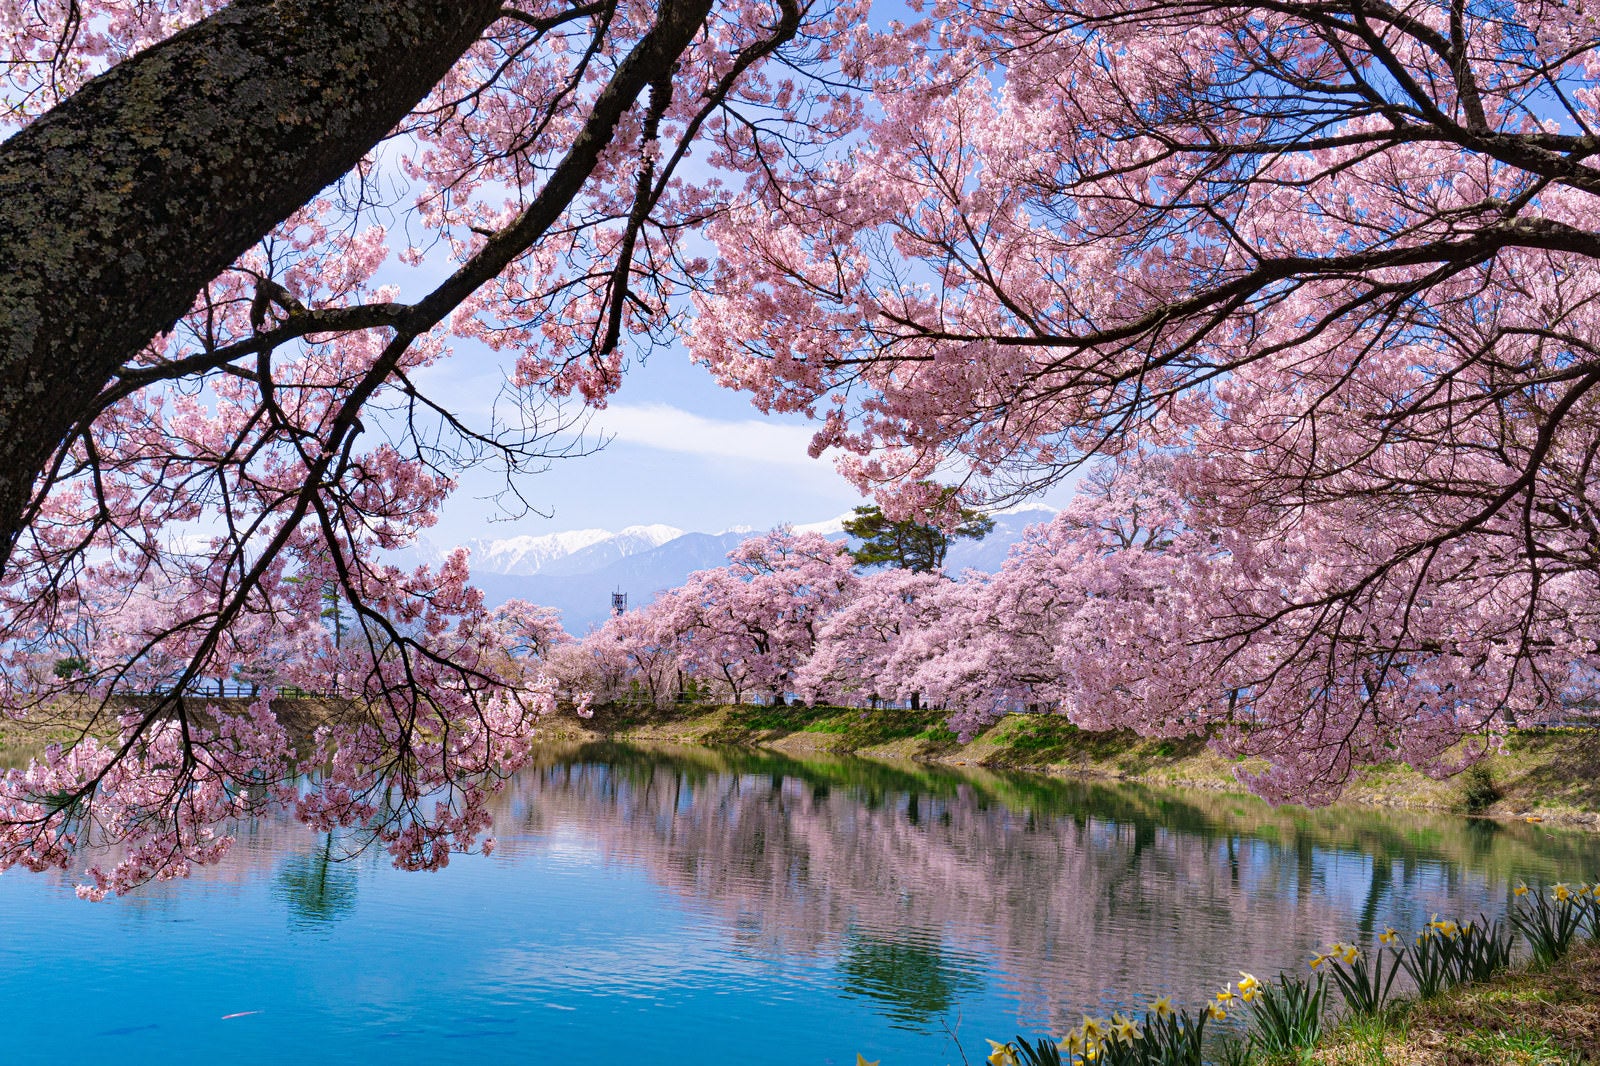 「花の合間から望む残雪の中央アルプスと風でざわめく水面に淡いピンクの影を落とす満開の桜」の写真